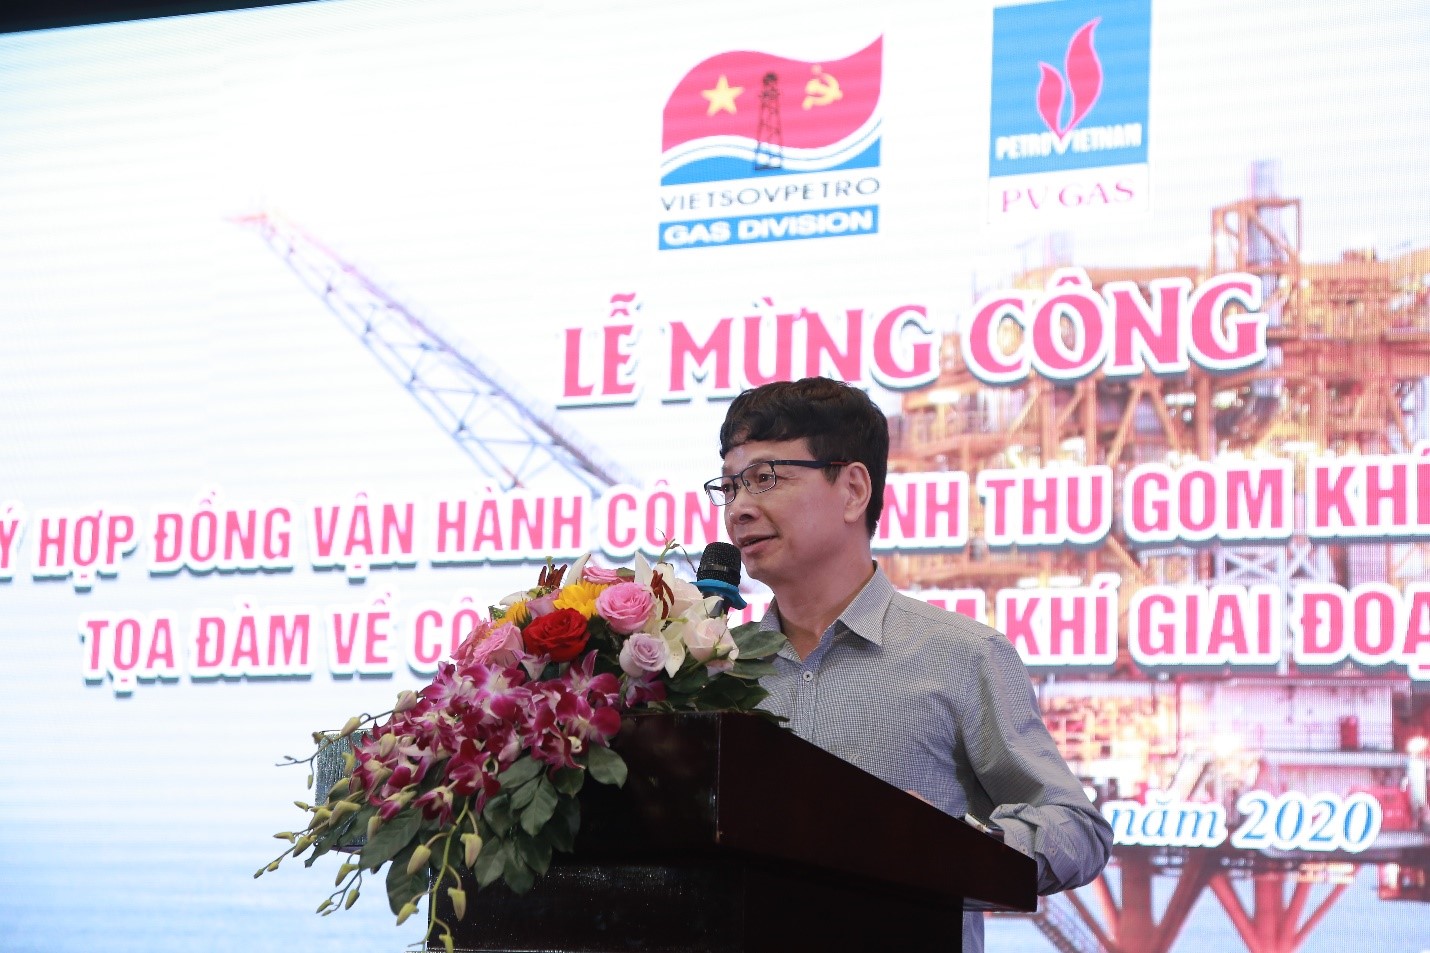 Đồng chí Luyện Công Chiến Phó Trưởng ban Khai thác, Tập đoàn Dầu khí Quốc gia Việt Nam (PVN) chúc mừng XN Khí tại Lễ mừng công.jpg